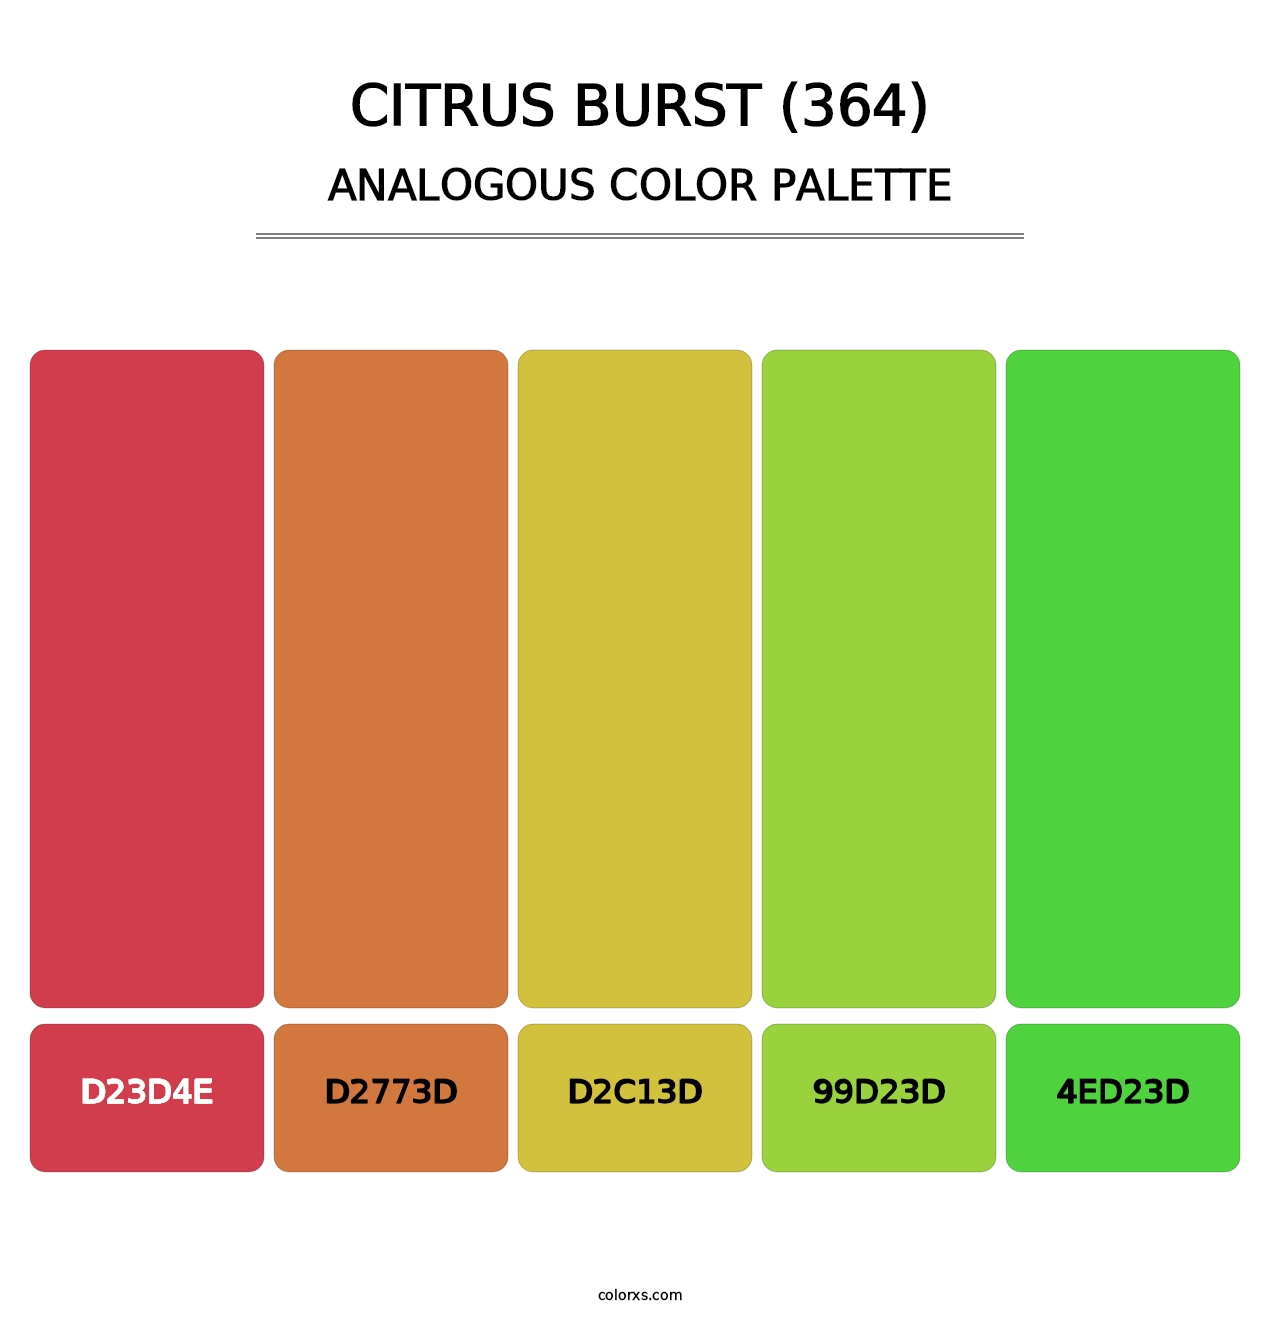 Citrus Burst (364) - Analogous Color Palette